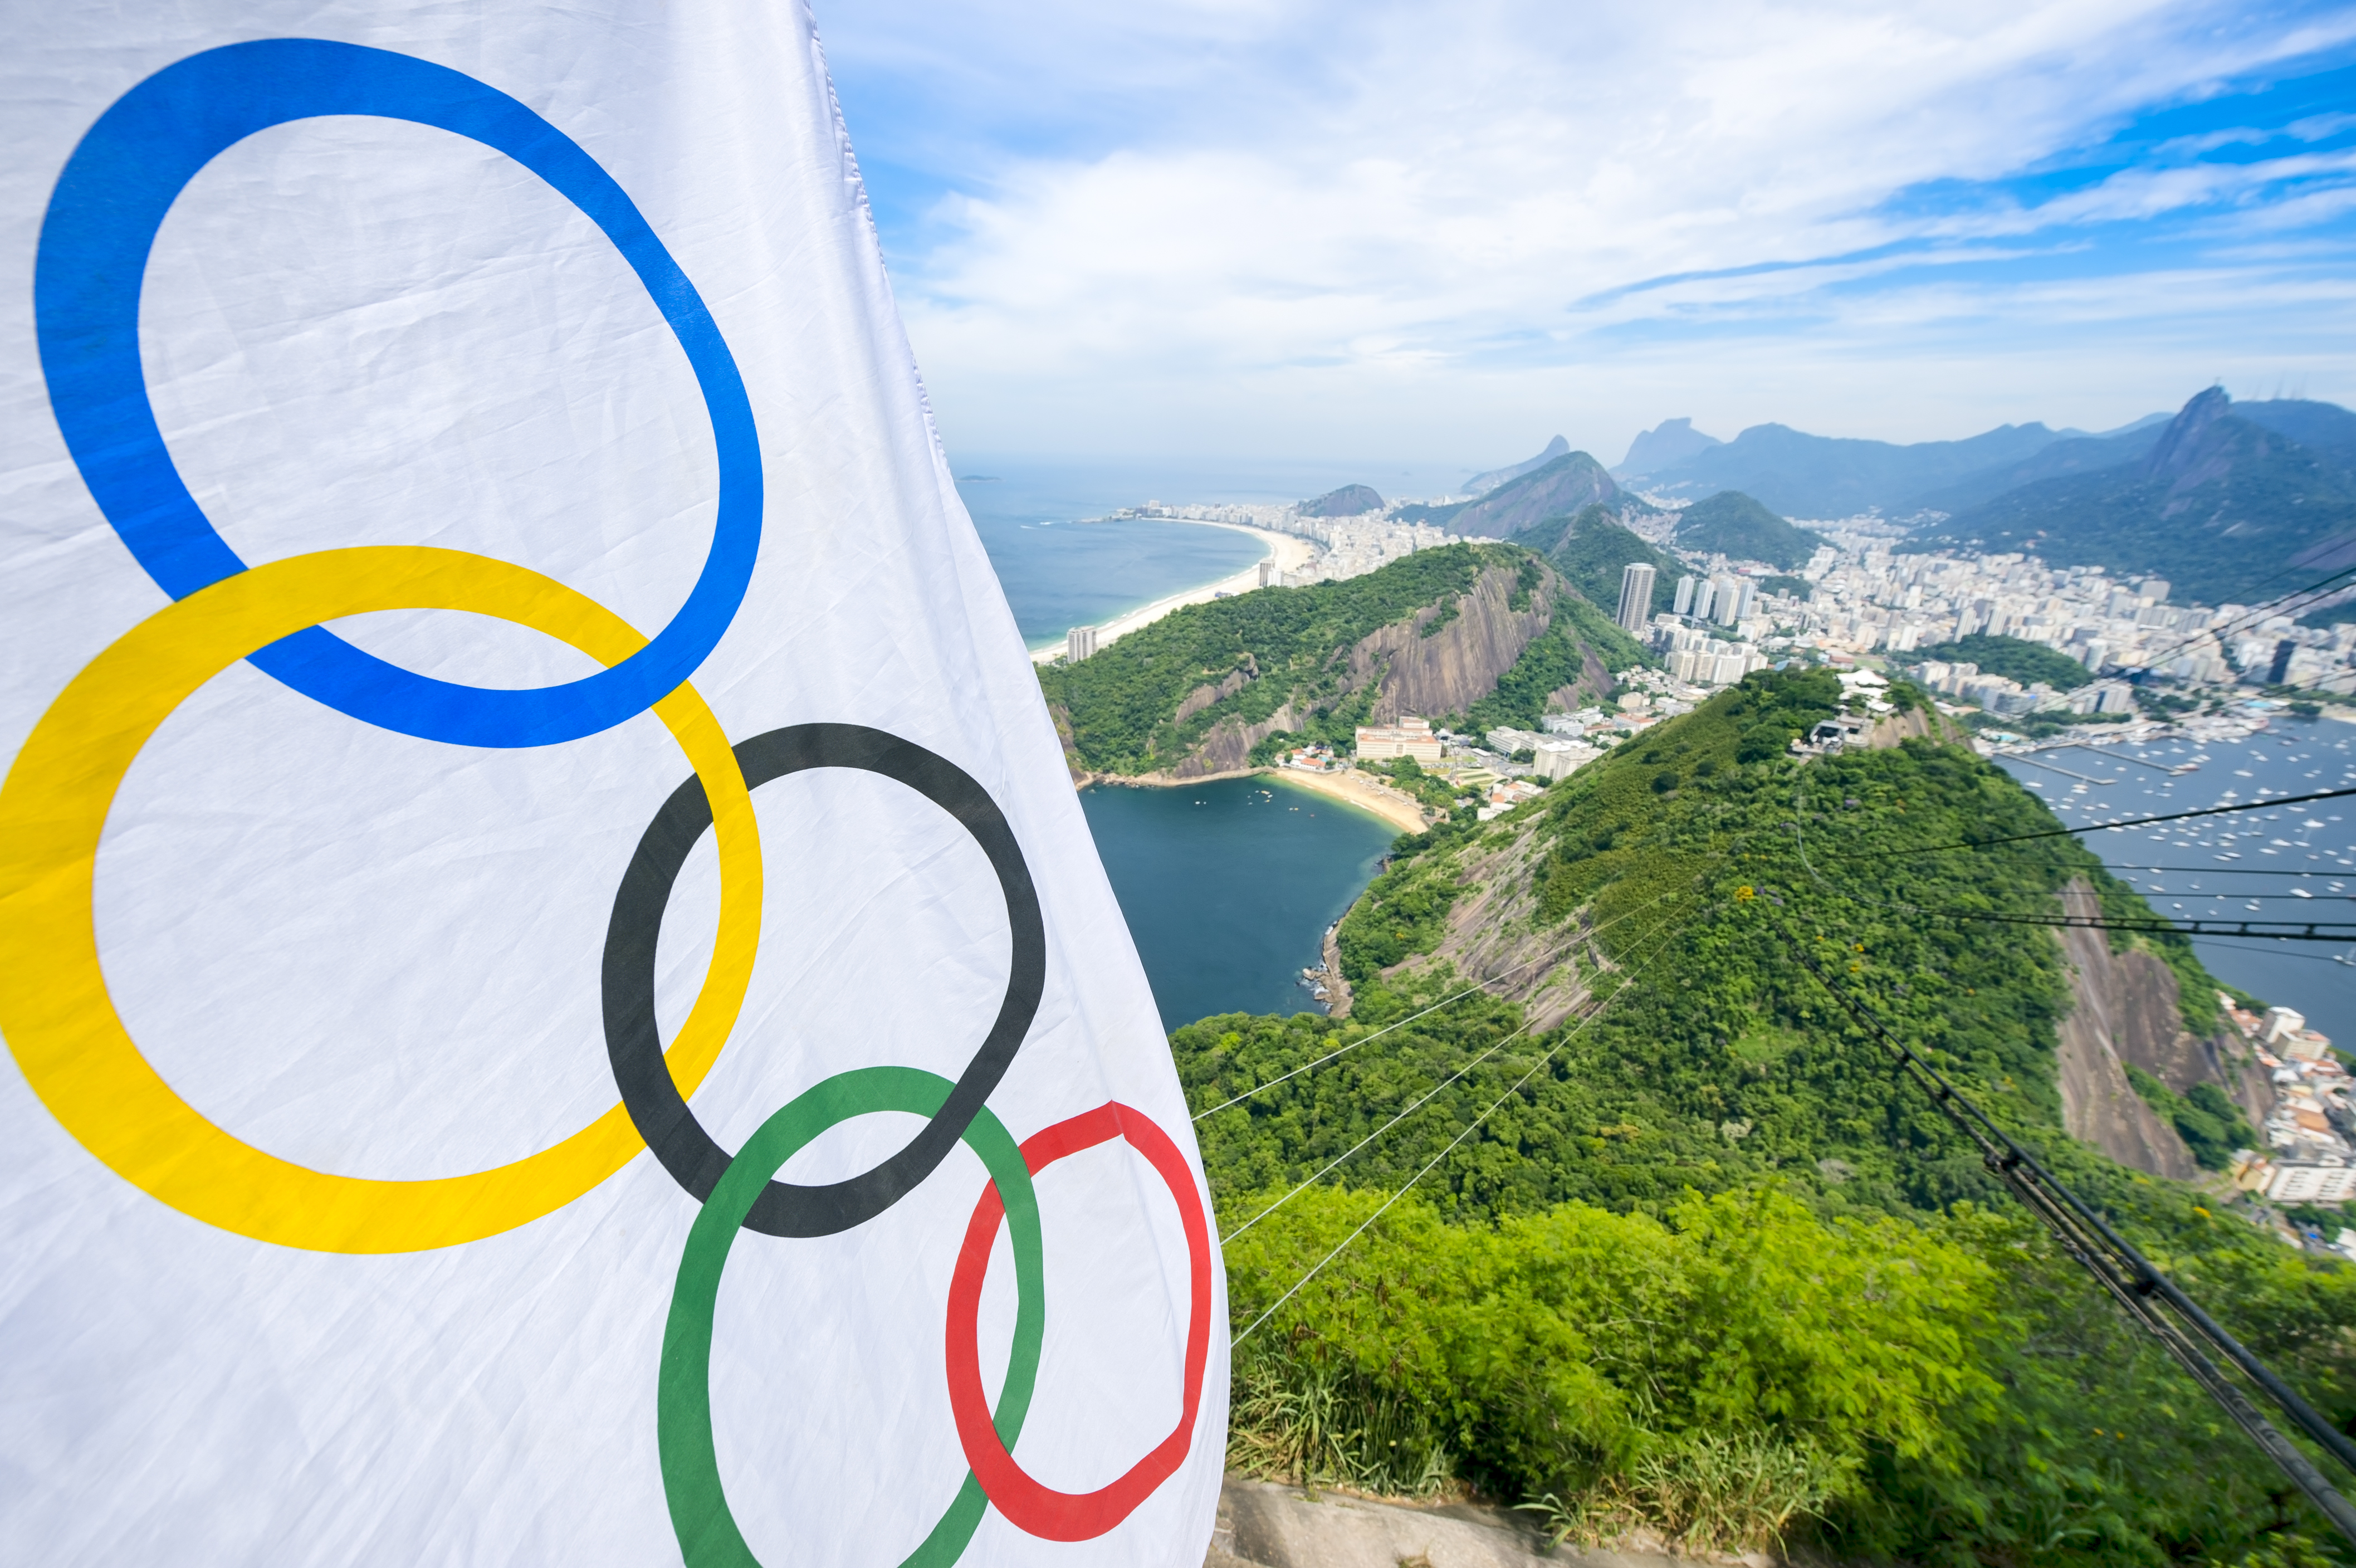 TV: Dias e horários dos jogos e competições do Brasil nas Olimpíadas 2016